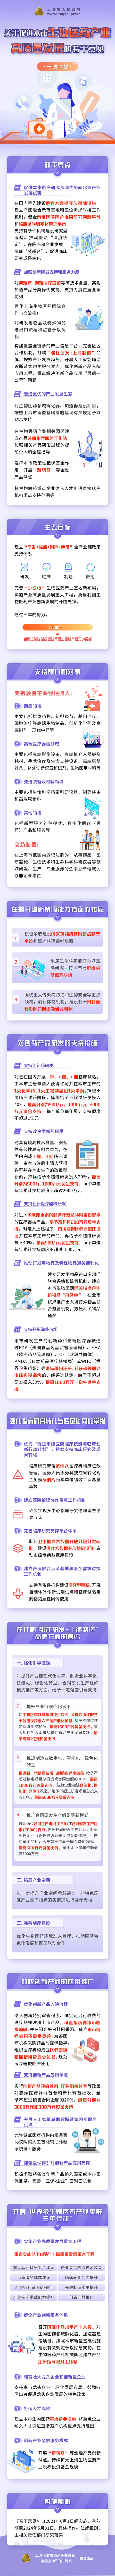 一图读懂《上海市促进生物医药产业高质量发展的若干意见》.jpg